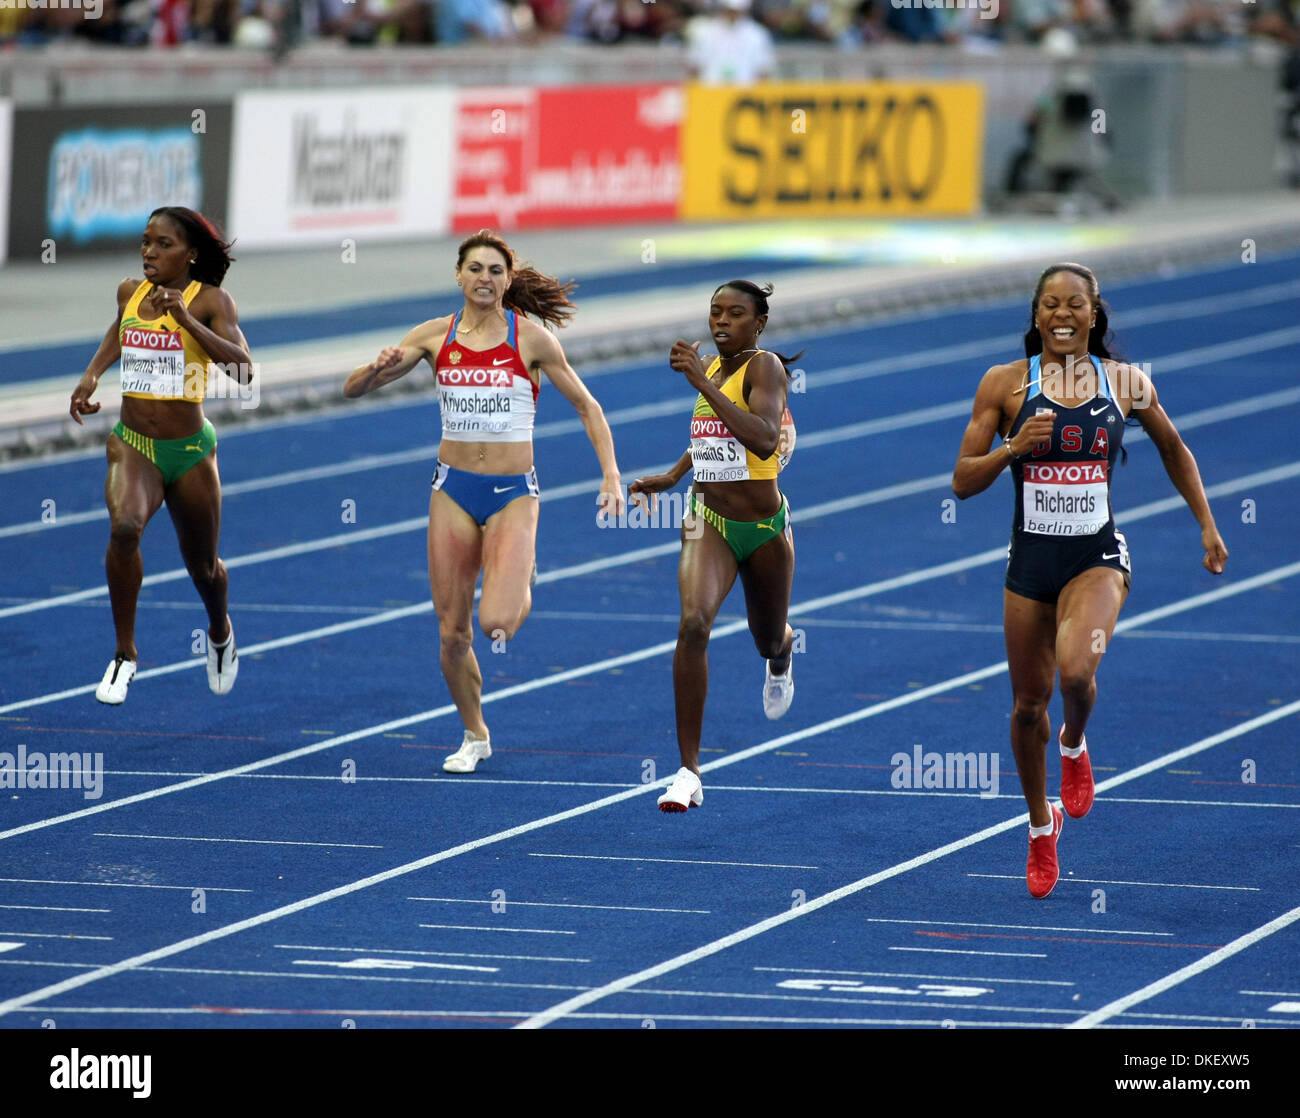 Aug 16, 2009 - Berlino, Germania - American SANIA RICHARDS (R) che ha vinto la 400m Finale donne durante il dodicesimo IAAF Campionati del Mondo di atletica leggera tenutosi a Stadio Olimpico di Berlino. (Credito Immagine: © Aleksander V. Chernykh/PhotoXpress/ZUMA Press) Foto Stock